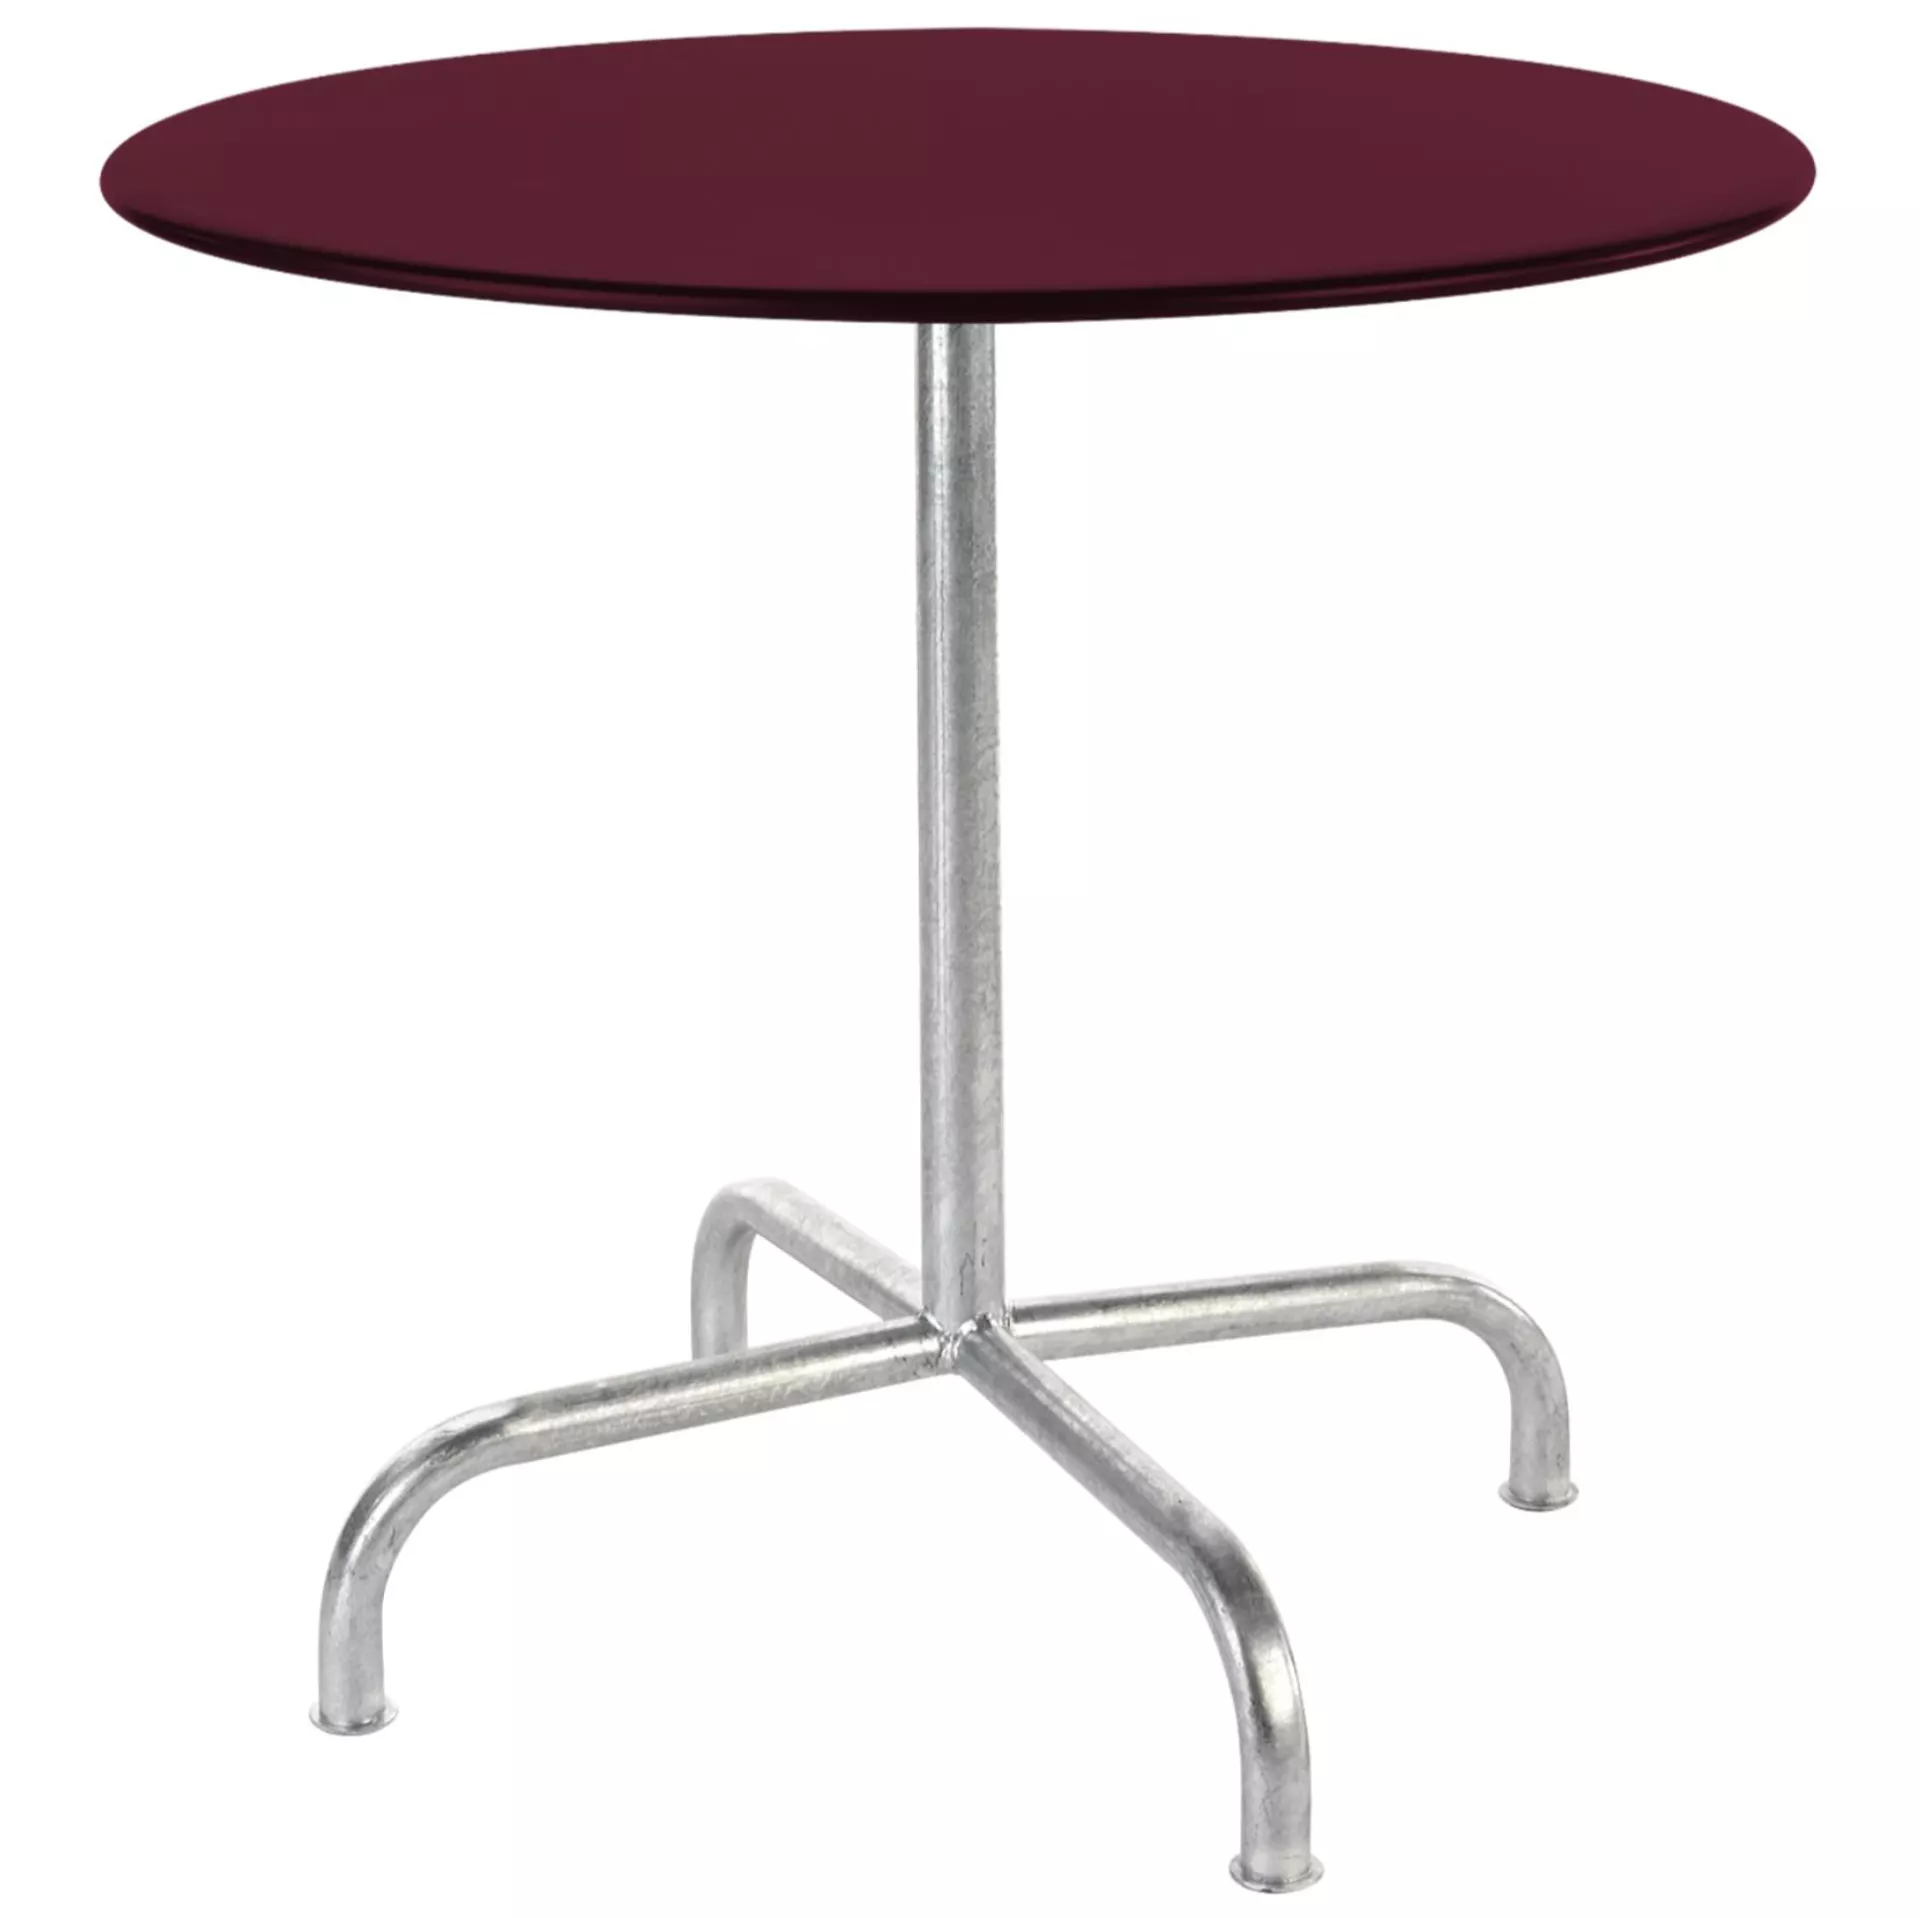 Metall-Tisch Rigi Rund Schaffner / Farbe: Bordeaux